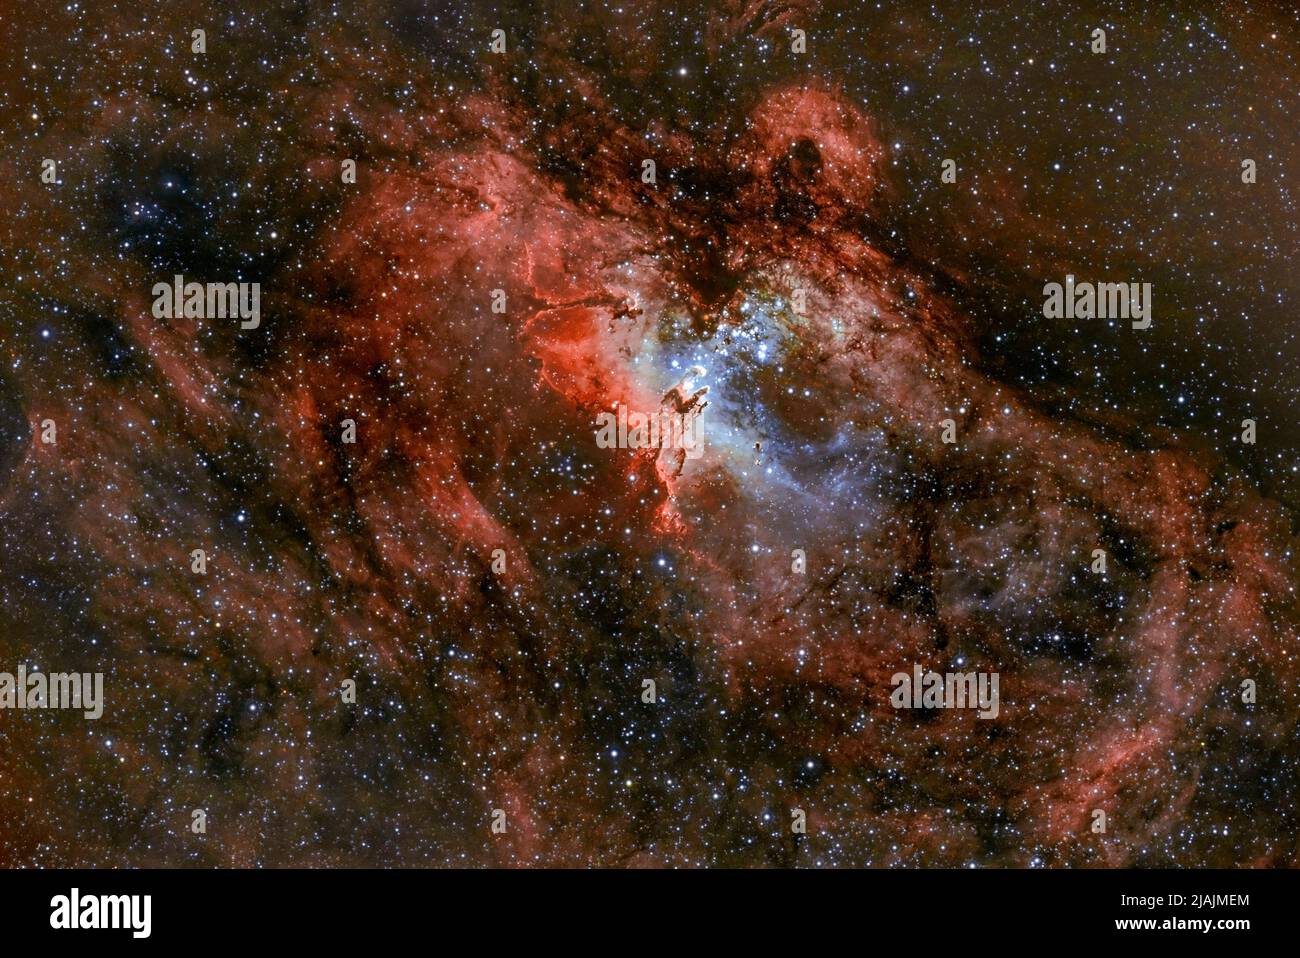 Pilastri della creazione, Messier 16. Foto Stock